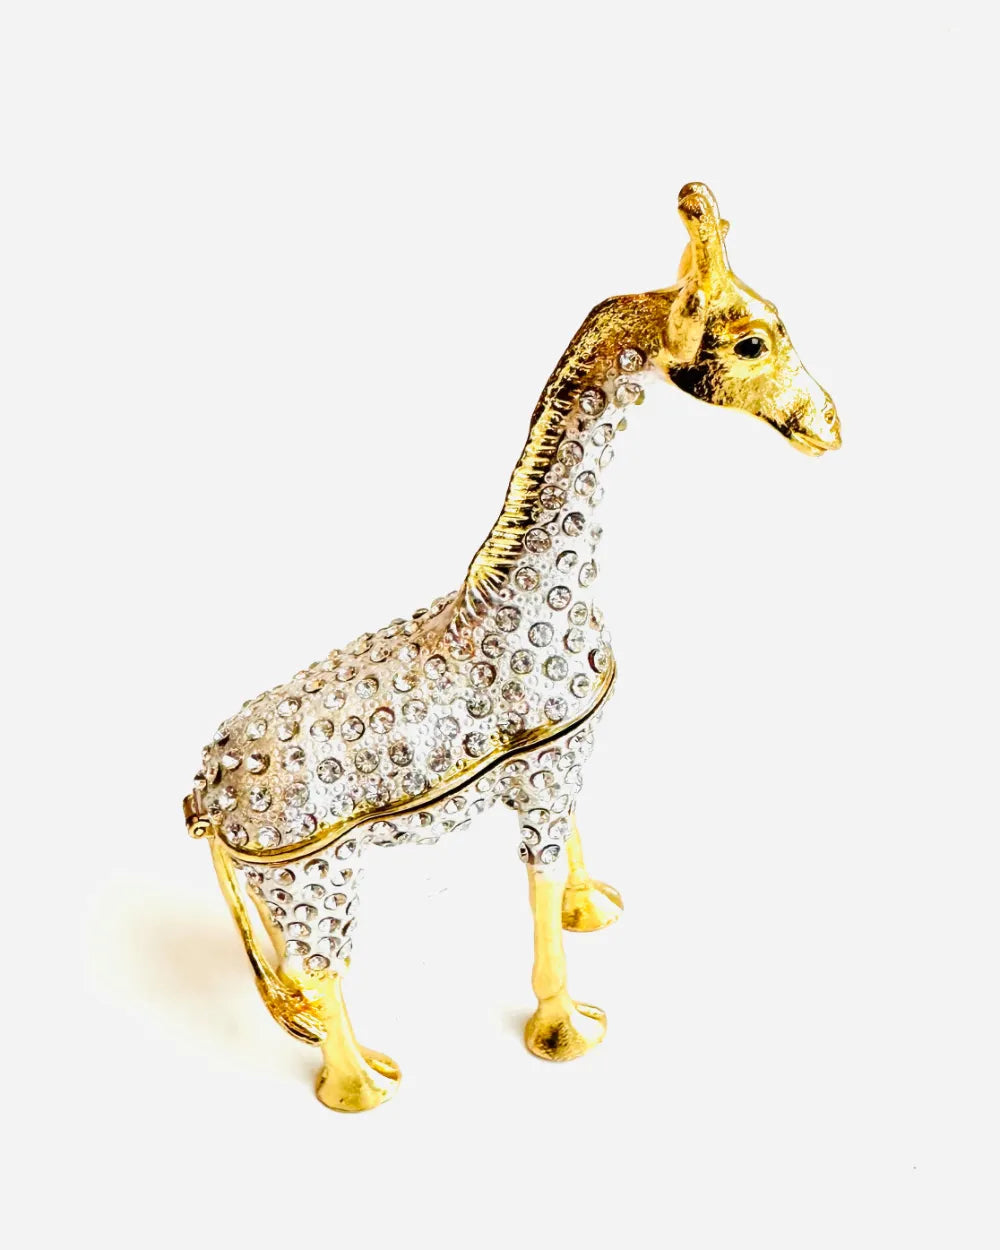 Unique Jewelery Box in Giraffe Design - with Gemstone (13 cm)